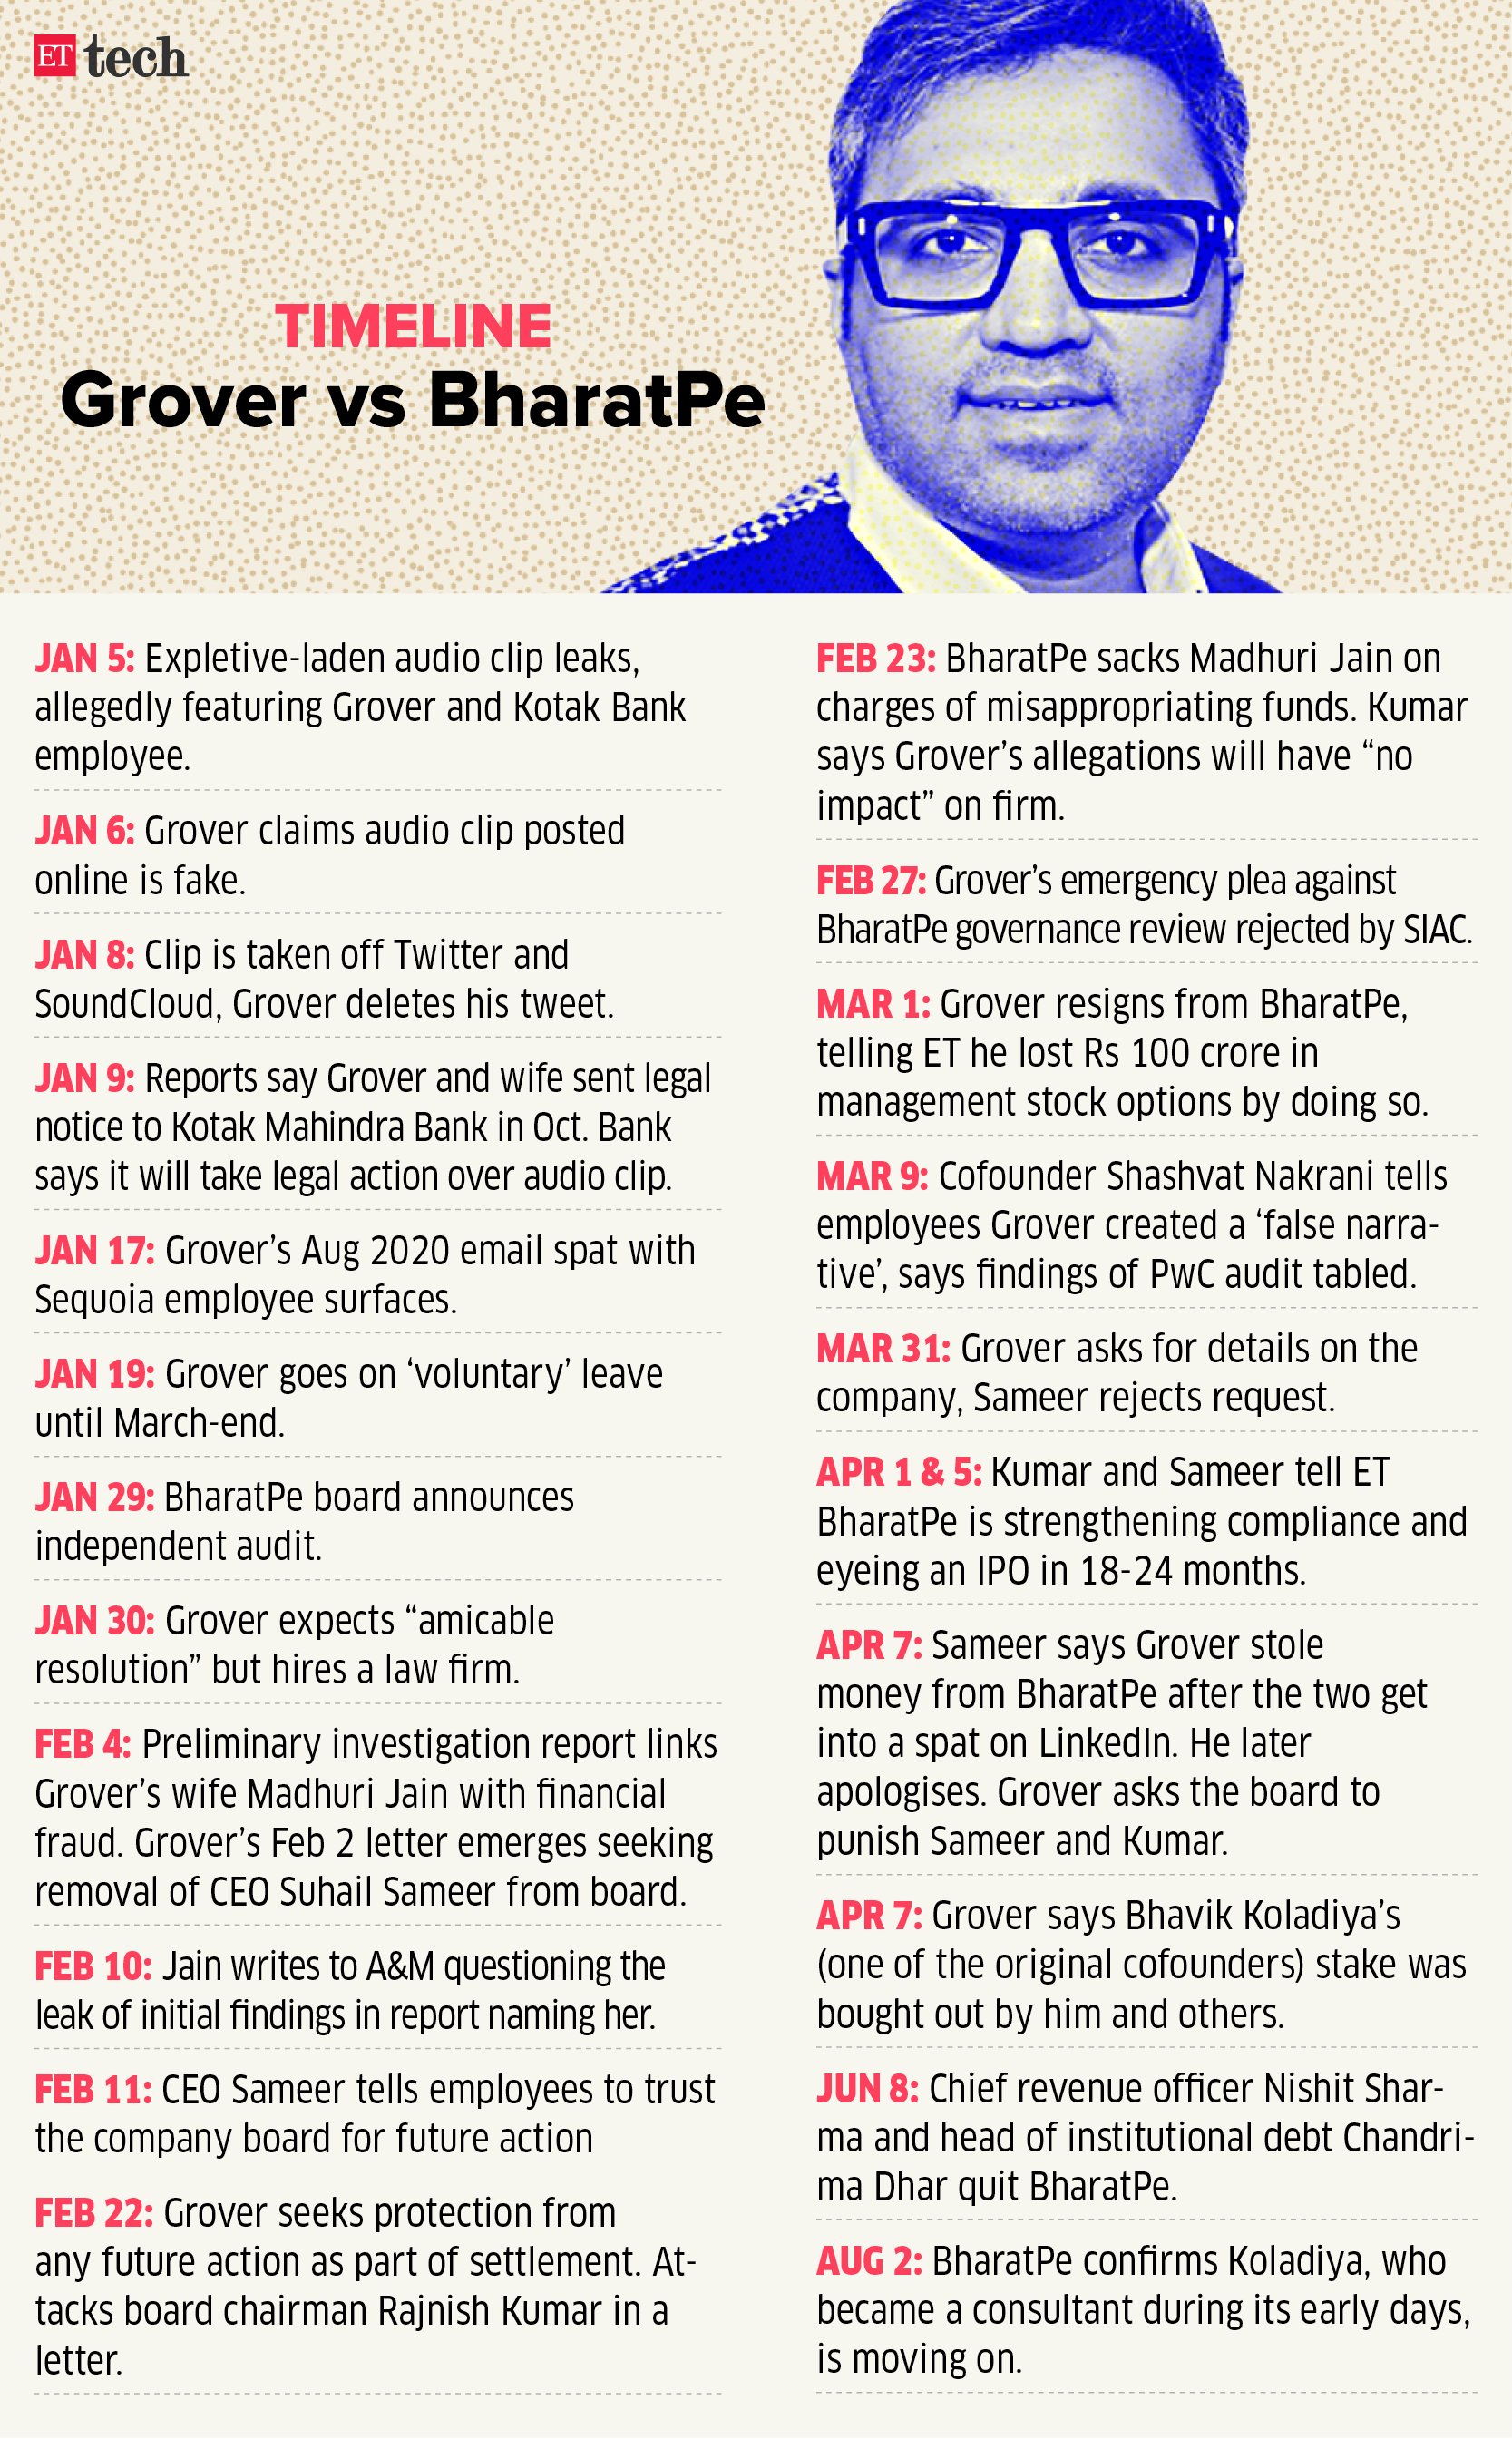 Ashneer Grover Vs BharatPe timeline